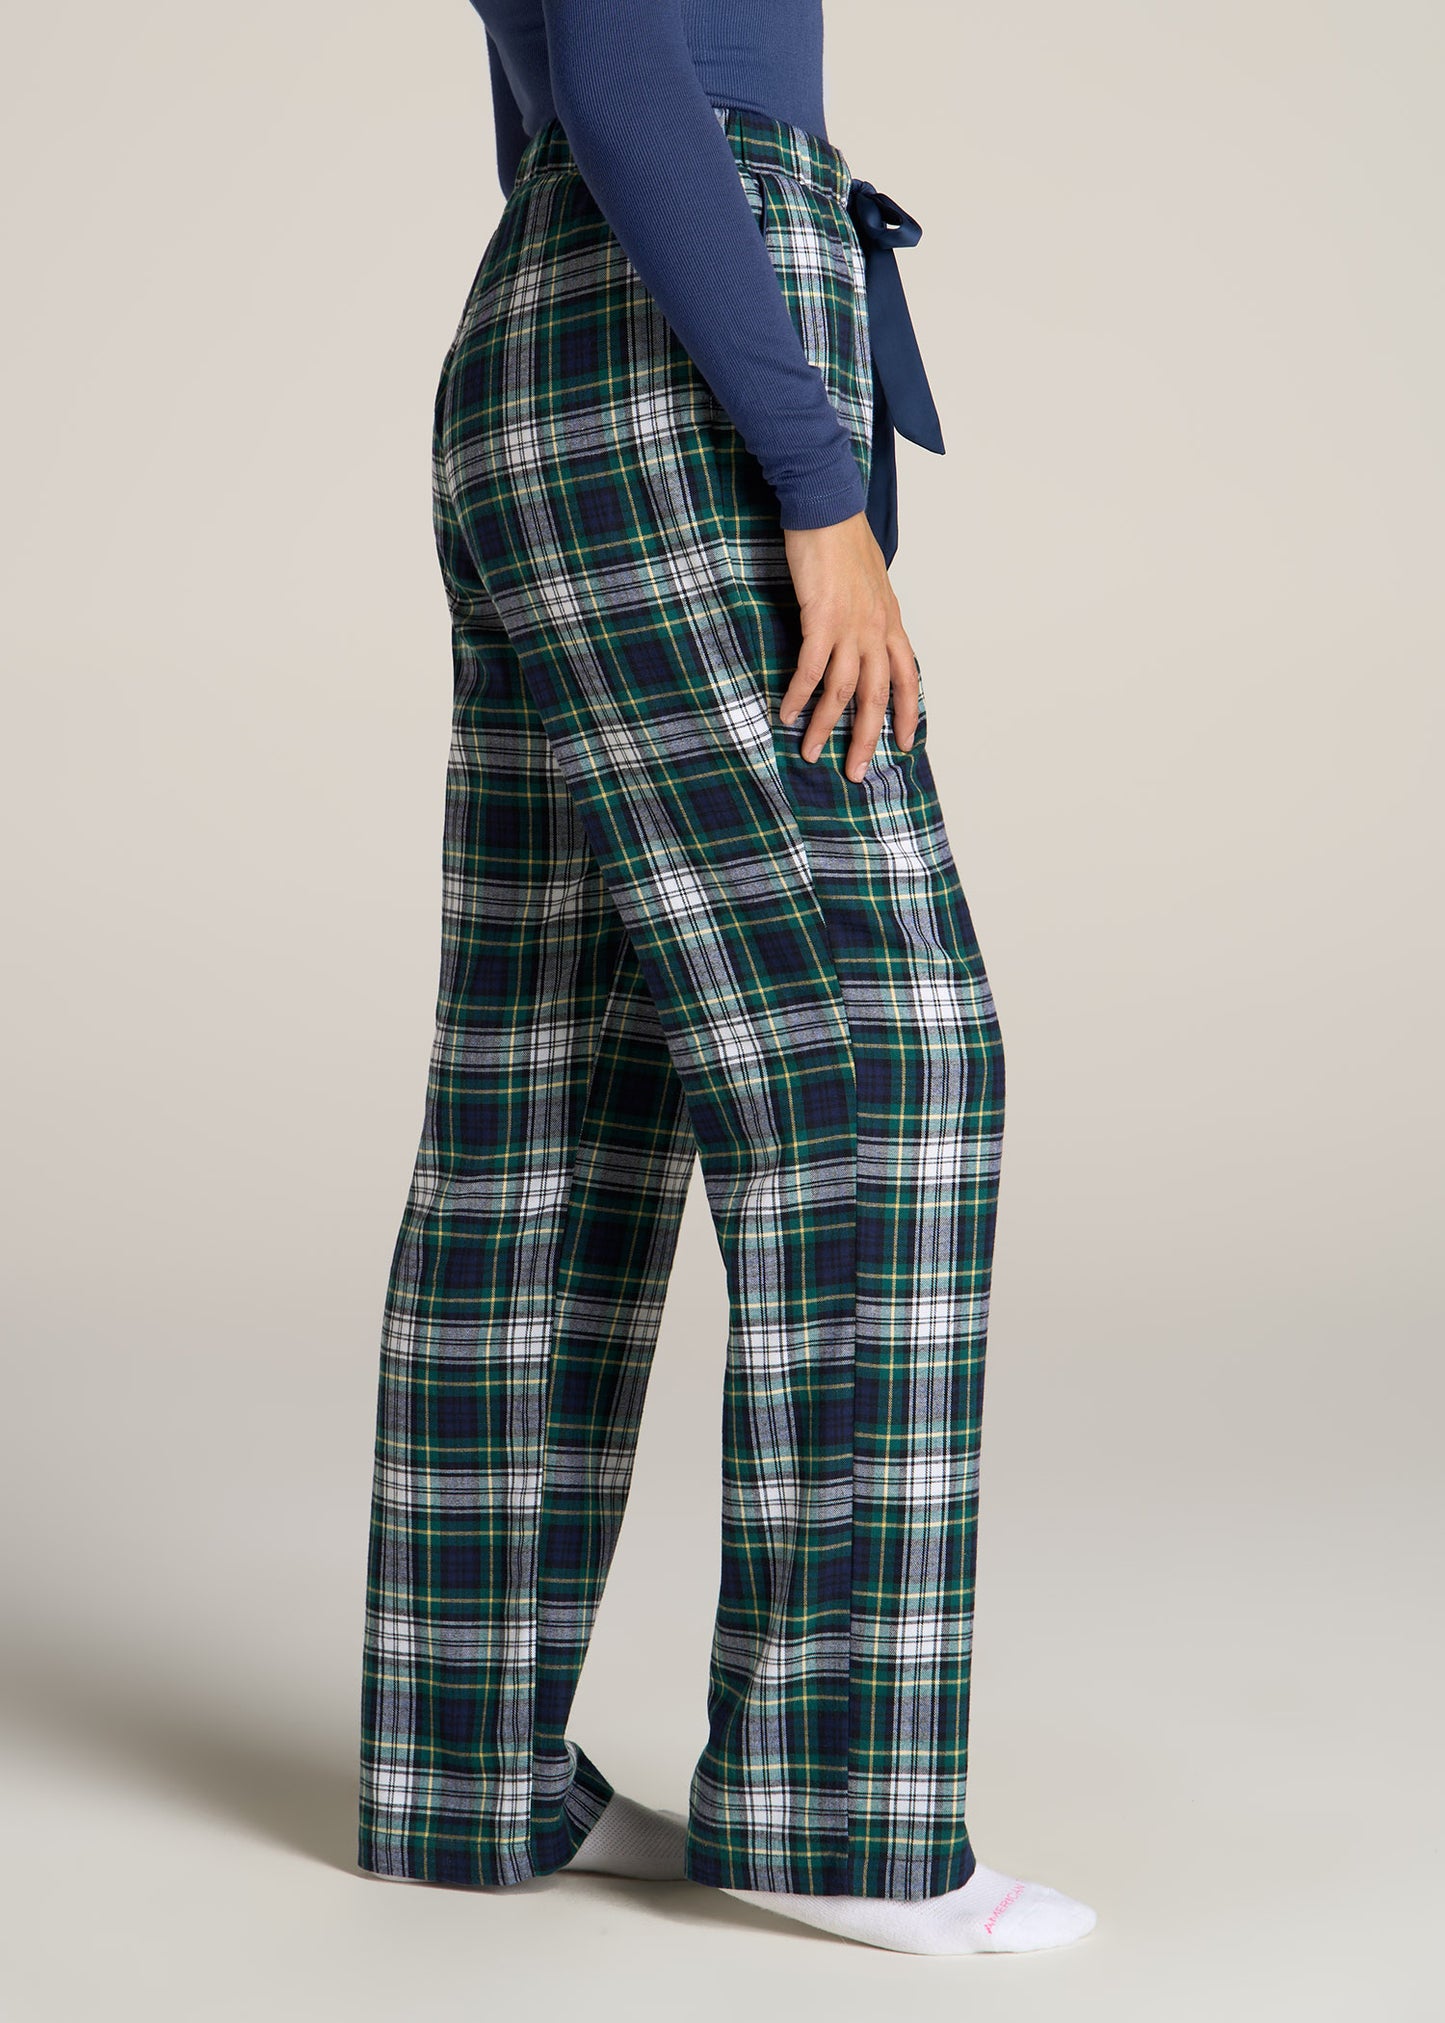 American-Tall-Women-Tie-Waist-Open-Bottom-Flannel-PJ-Pants-Green-Navy-Tartan-side